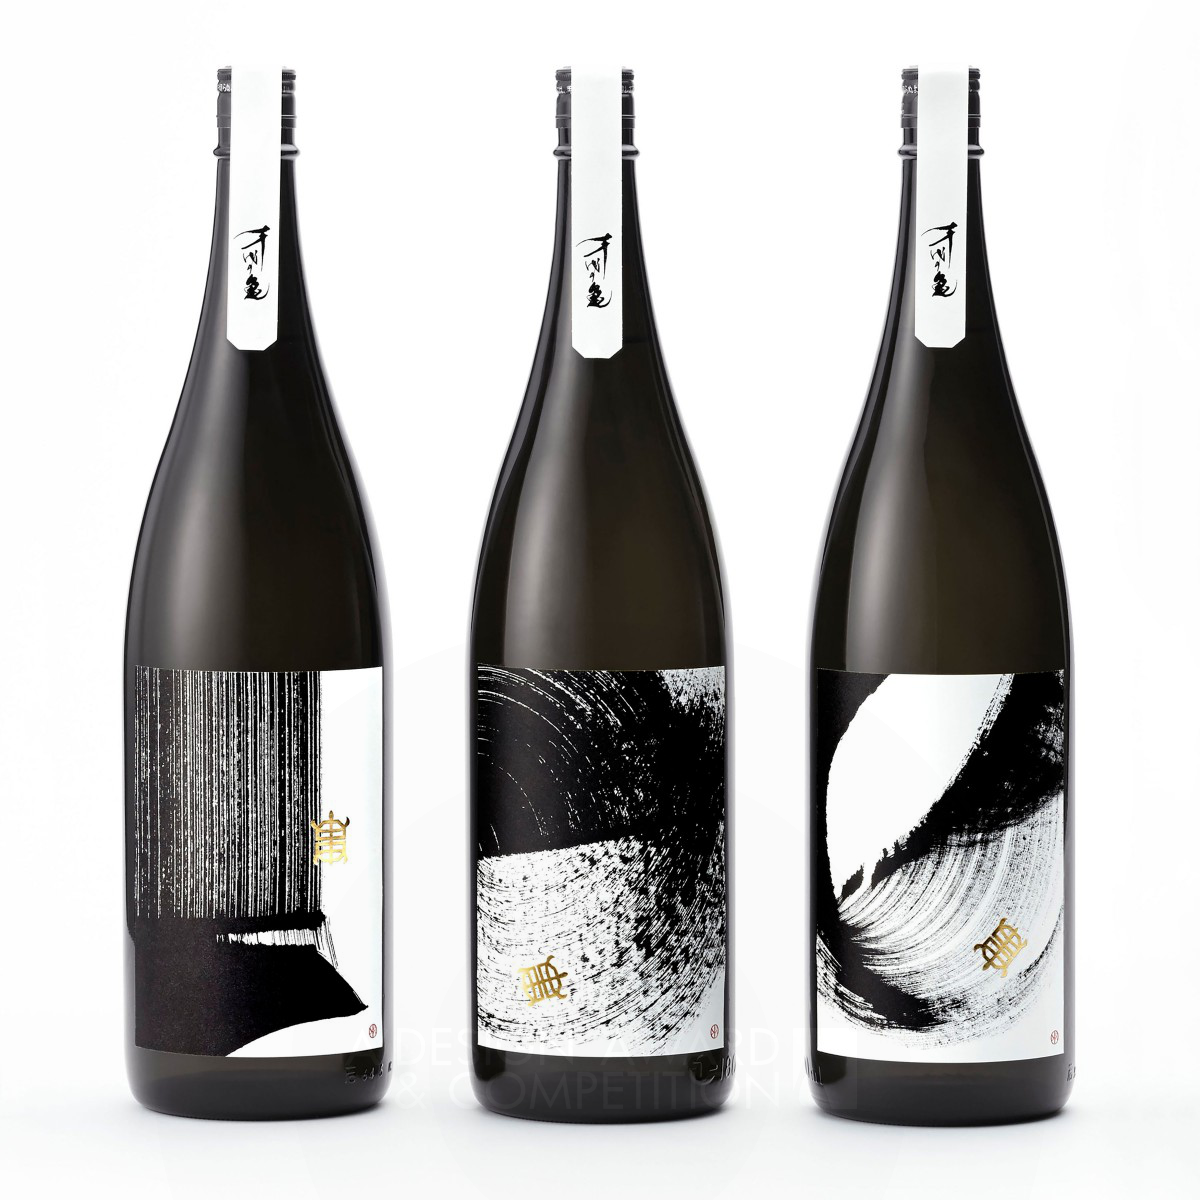 Souryu sake package design